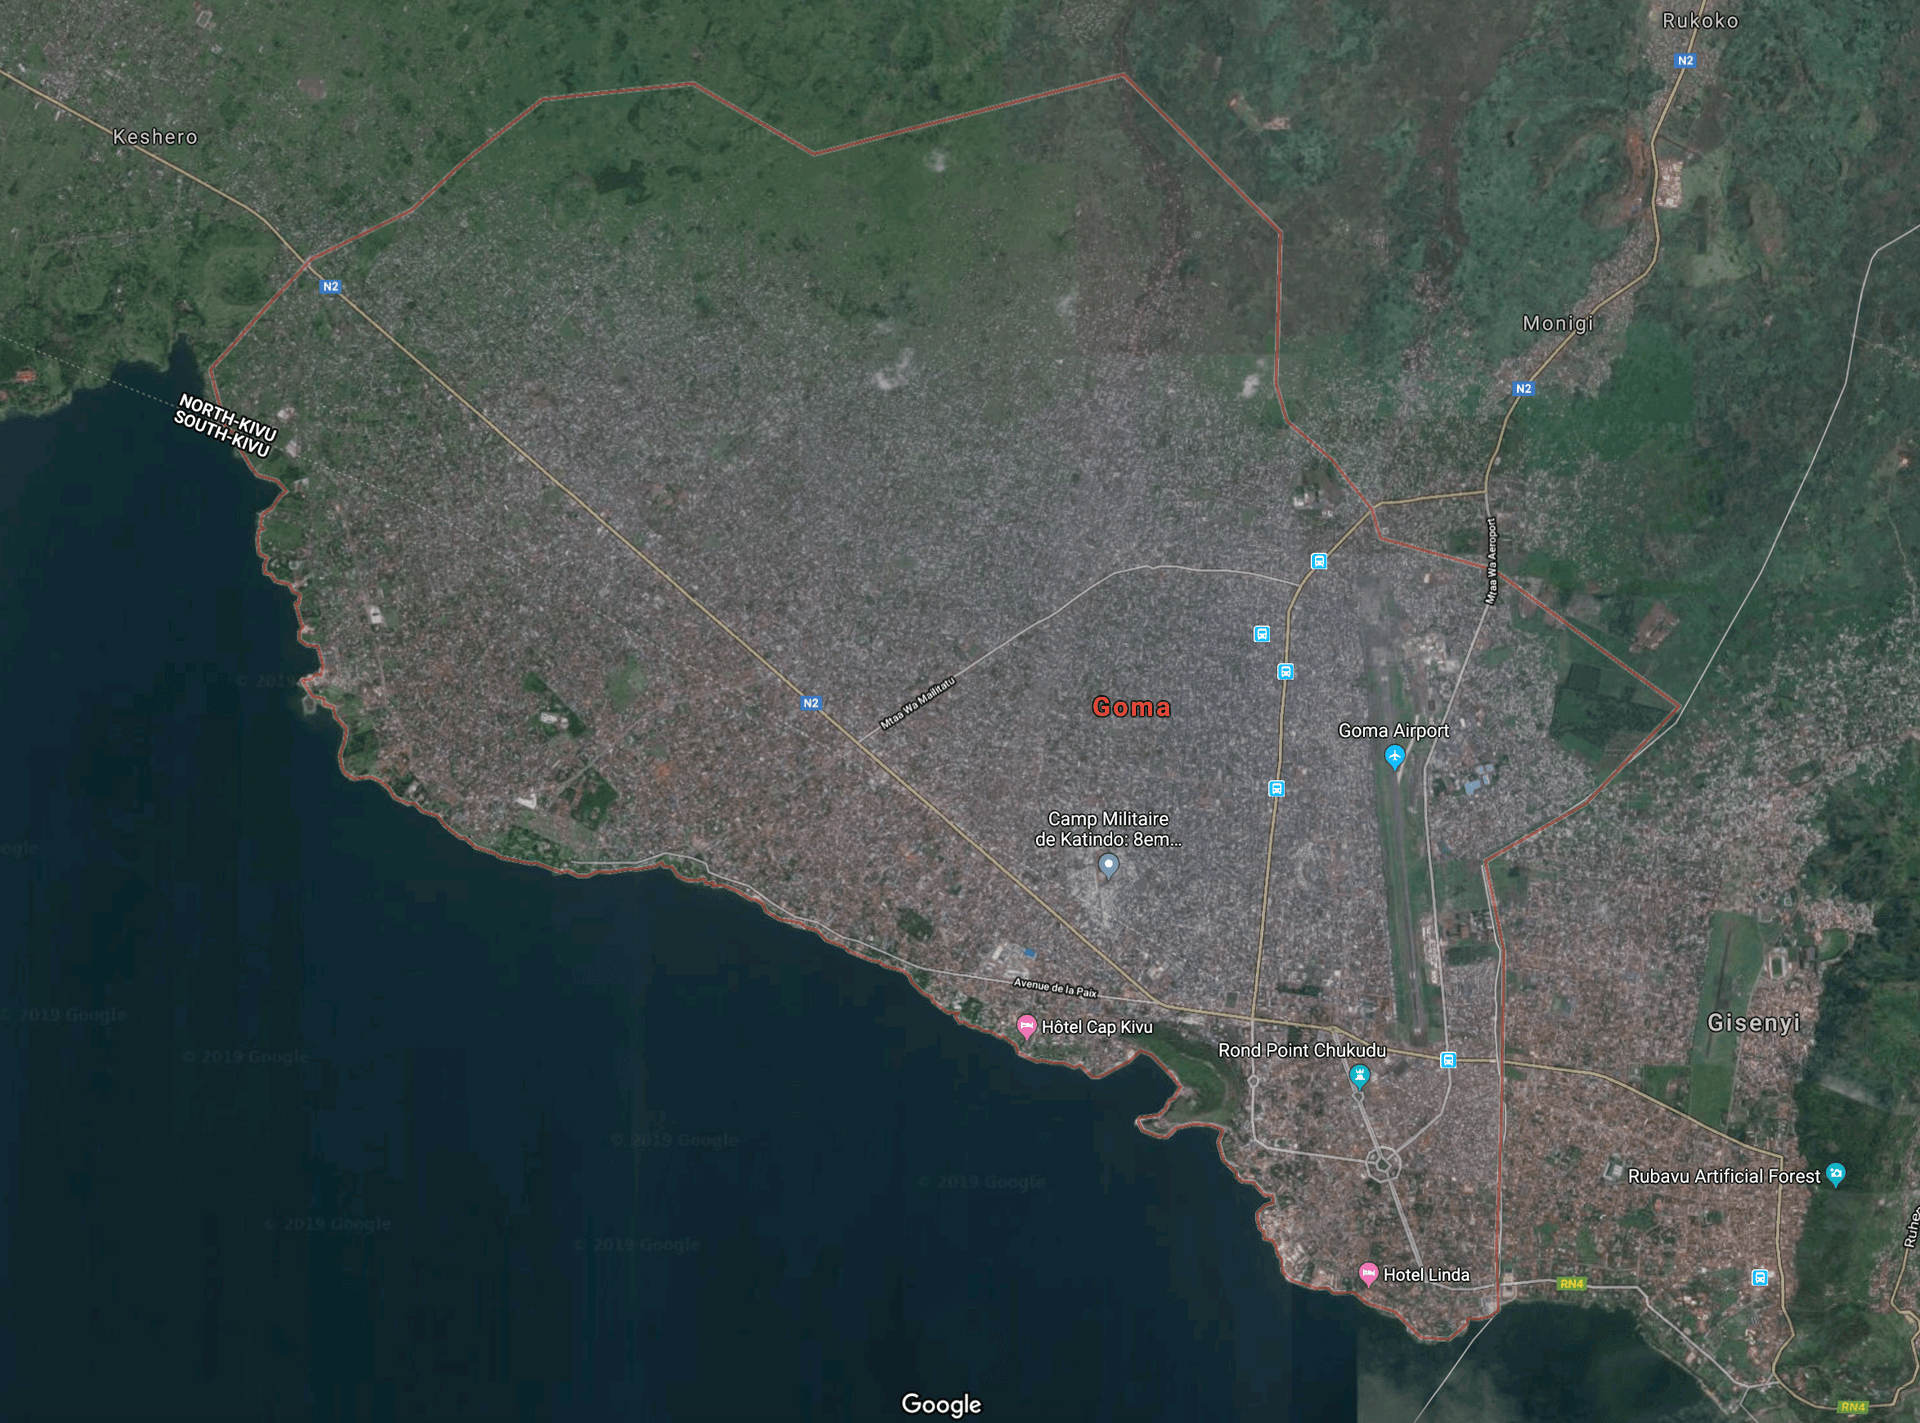 Goma Satellite Image